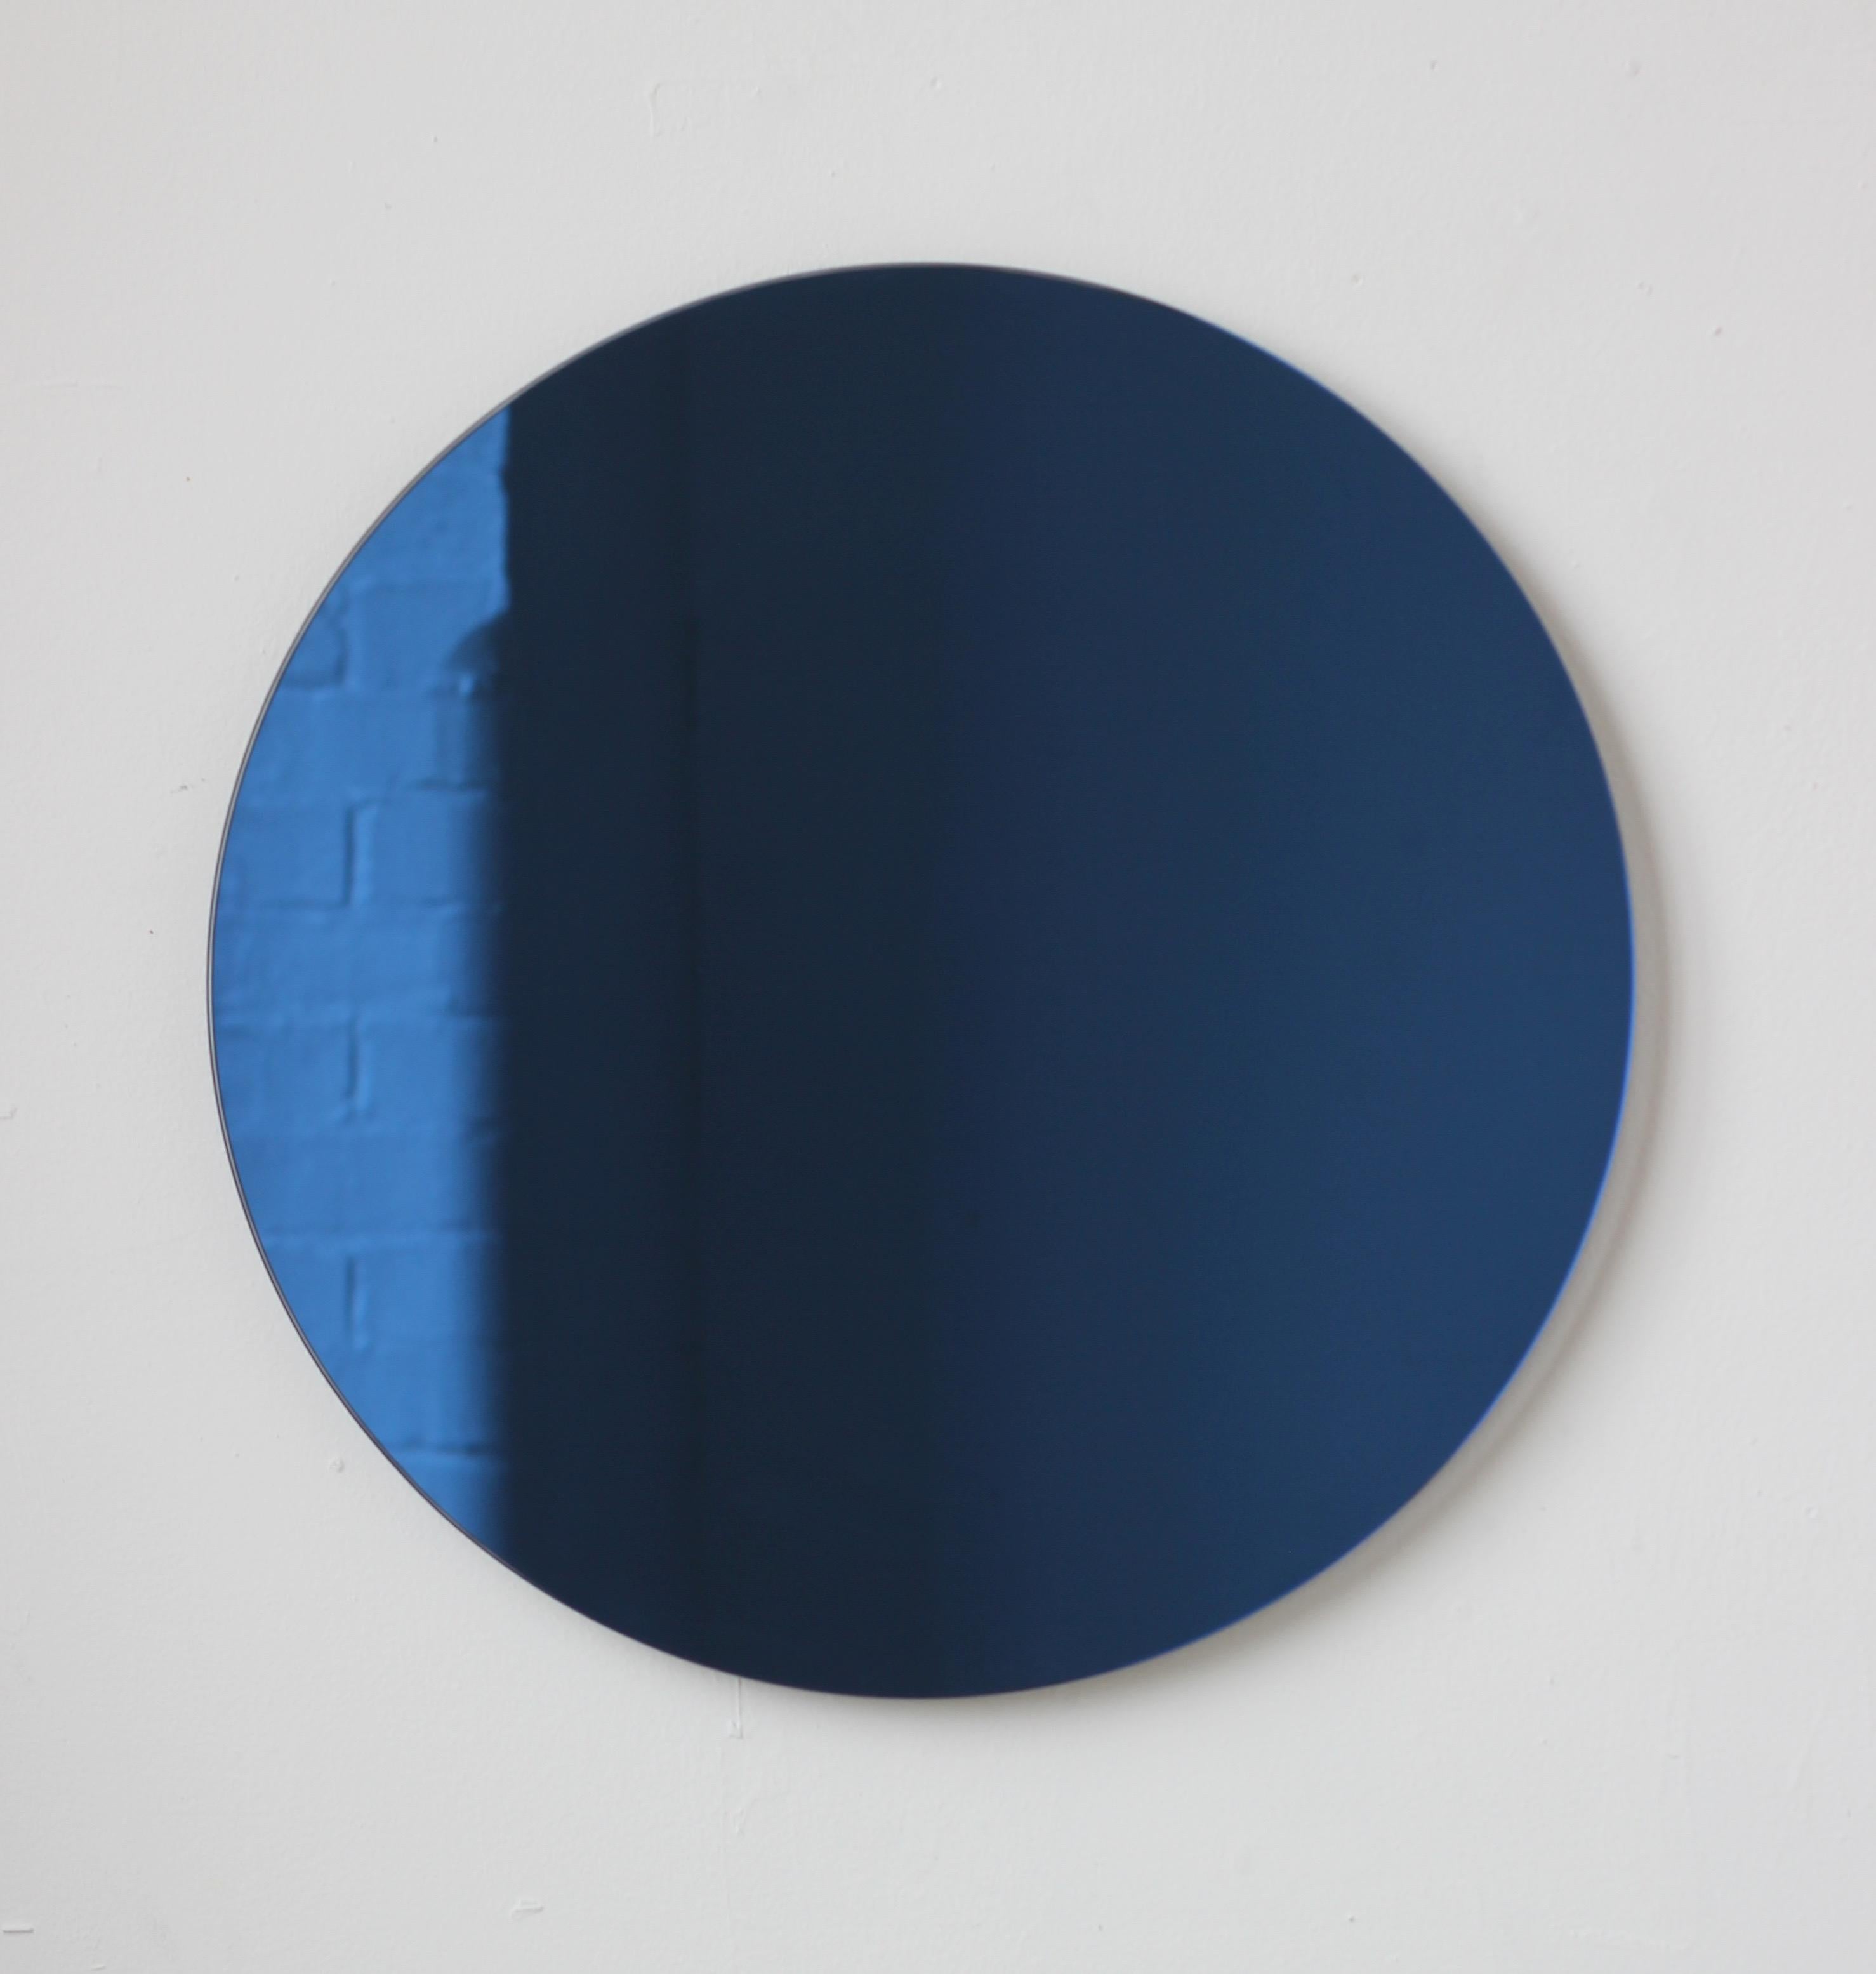 Charmanter und minimalistischer runder, rahmenloser, blau getönter Orbis™-Spiegel mit Schwebeeffekt. Hochwertiges Design, das dafür sorgt, dass der Spiegel perfekt parallel zur Wand steht. Entworfen und hergestellt in London, UK.

Ausgestattet mit